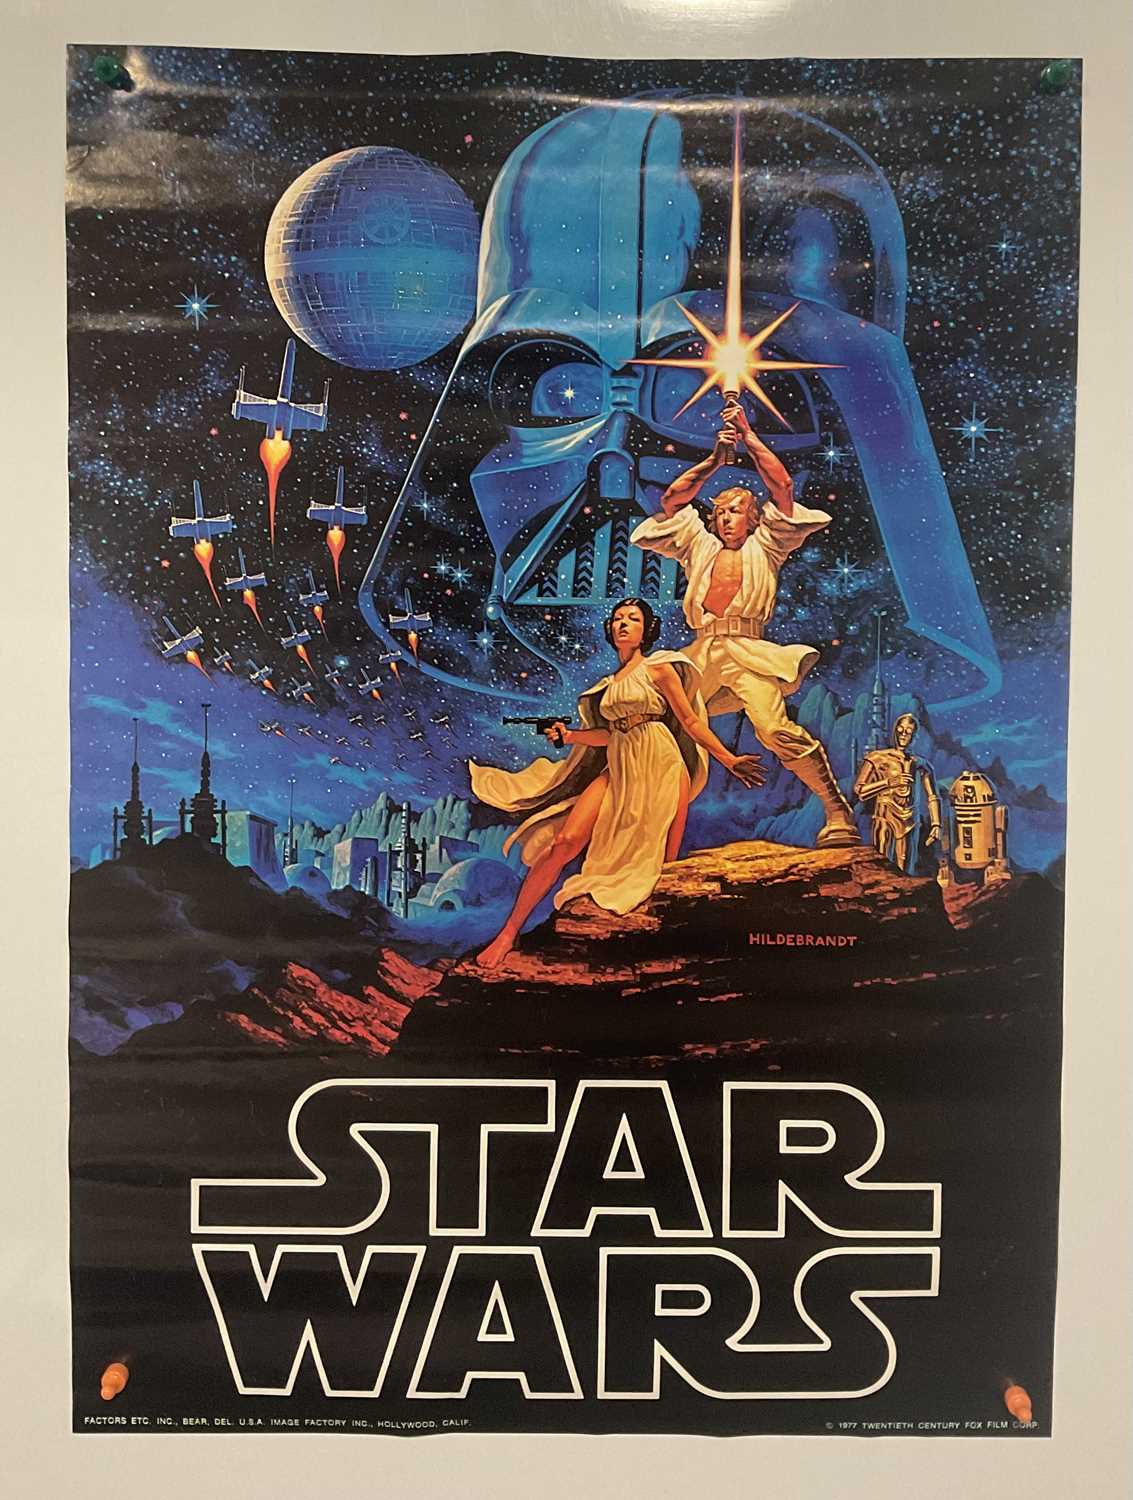 STAR WARS - commercial poster (Factors Inc,1977) - Hildebrandt artwork, 71cm x 51cm, rolled